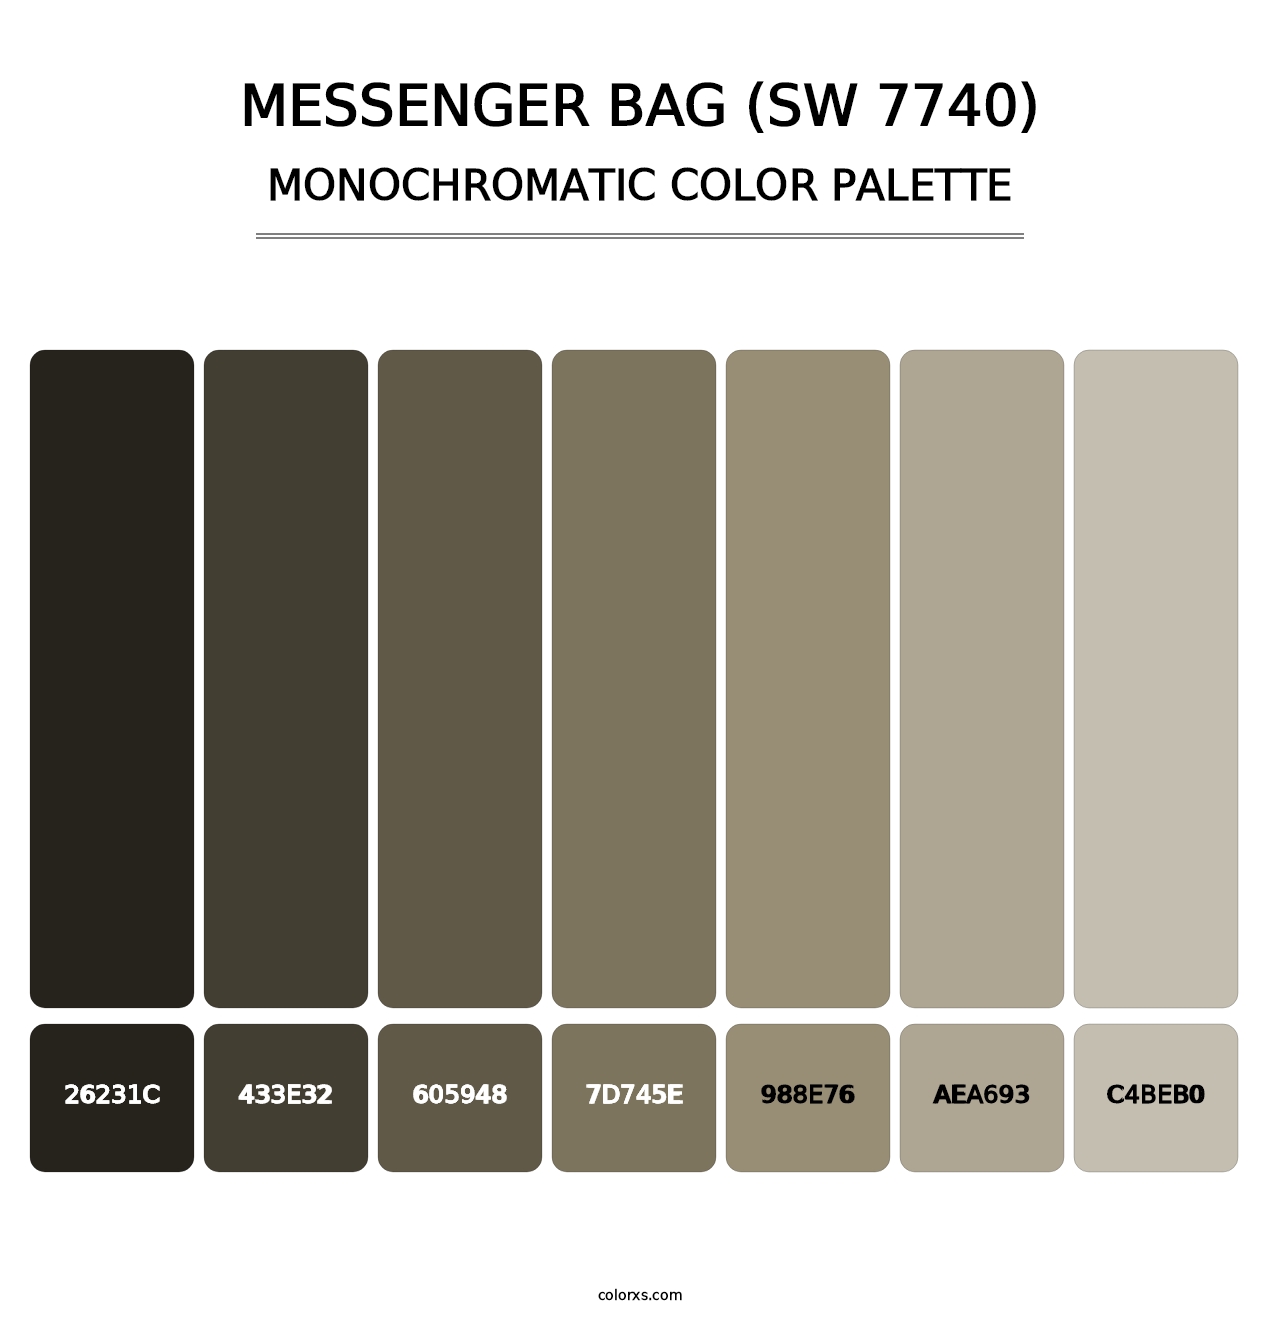 Messenger Bag (SW 7740) - Monochromatic Color Palette